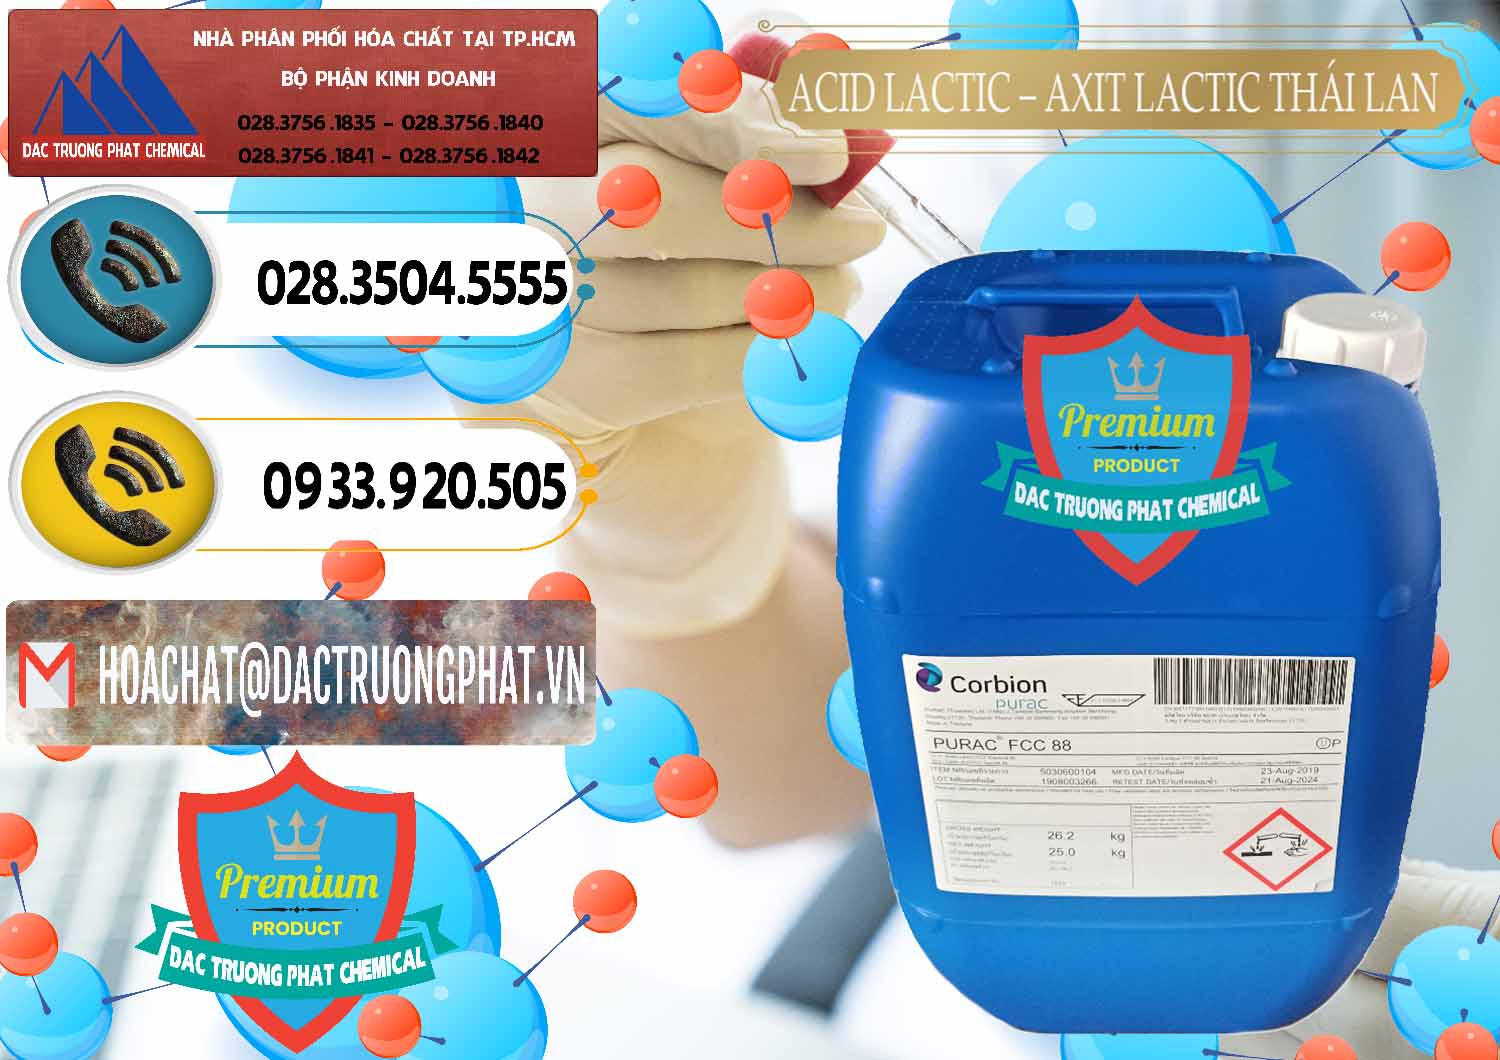 Công ty bán _ phân phối Acid Lactic – Axit Lactic Thái Lan Purac FCC 88 - 0012 - Cty chuyên phân phối - nhập khẩu hóa chất tại TP.HCM - hoachatdetnhuom.vn